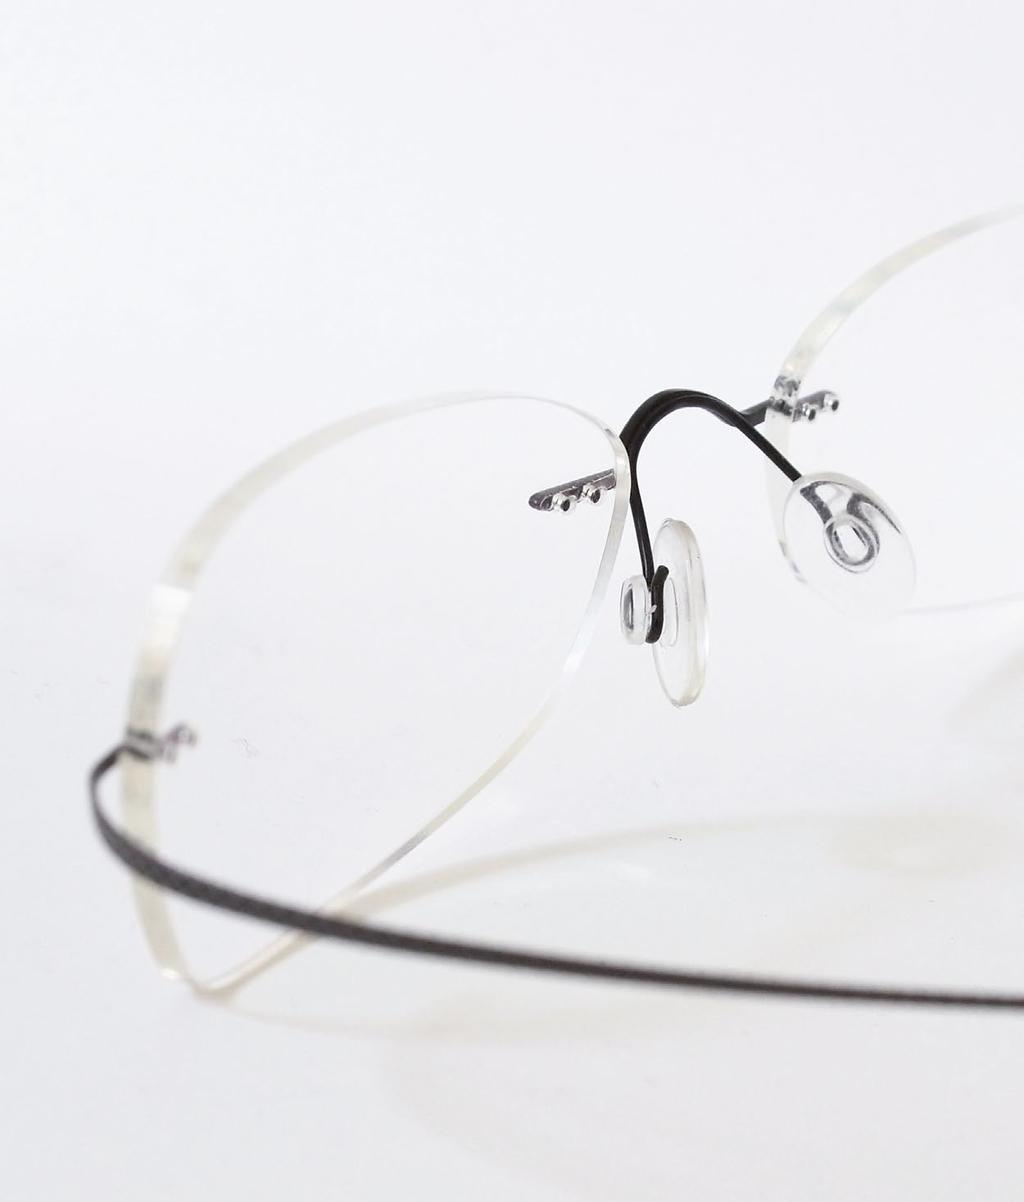 Anders als bei herkömmlichen Bohrbrillensystemen wird unsere nicht verschraubt oder gedübelt, sondern vergossen. Eine Technologie, die von uns kreiert und kontinuierlich weiterentwickelt wird.